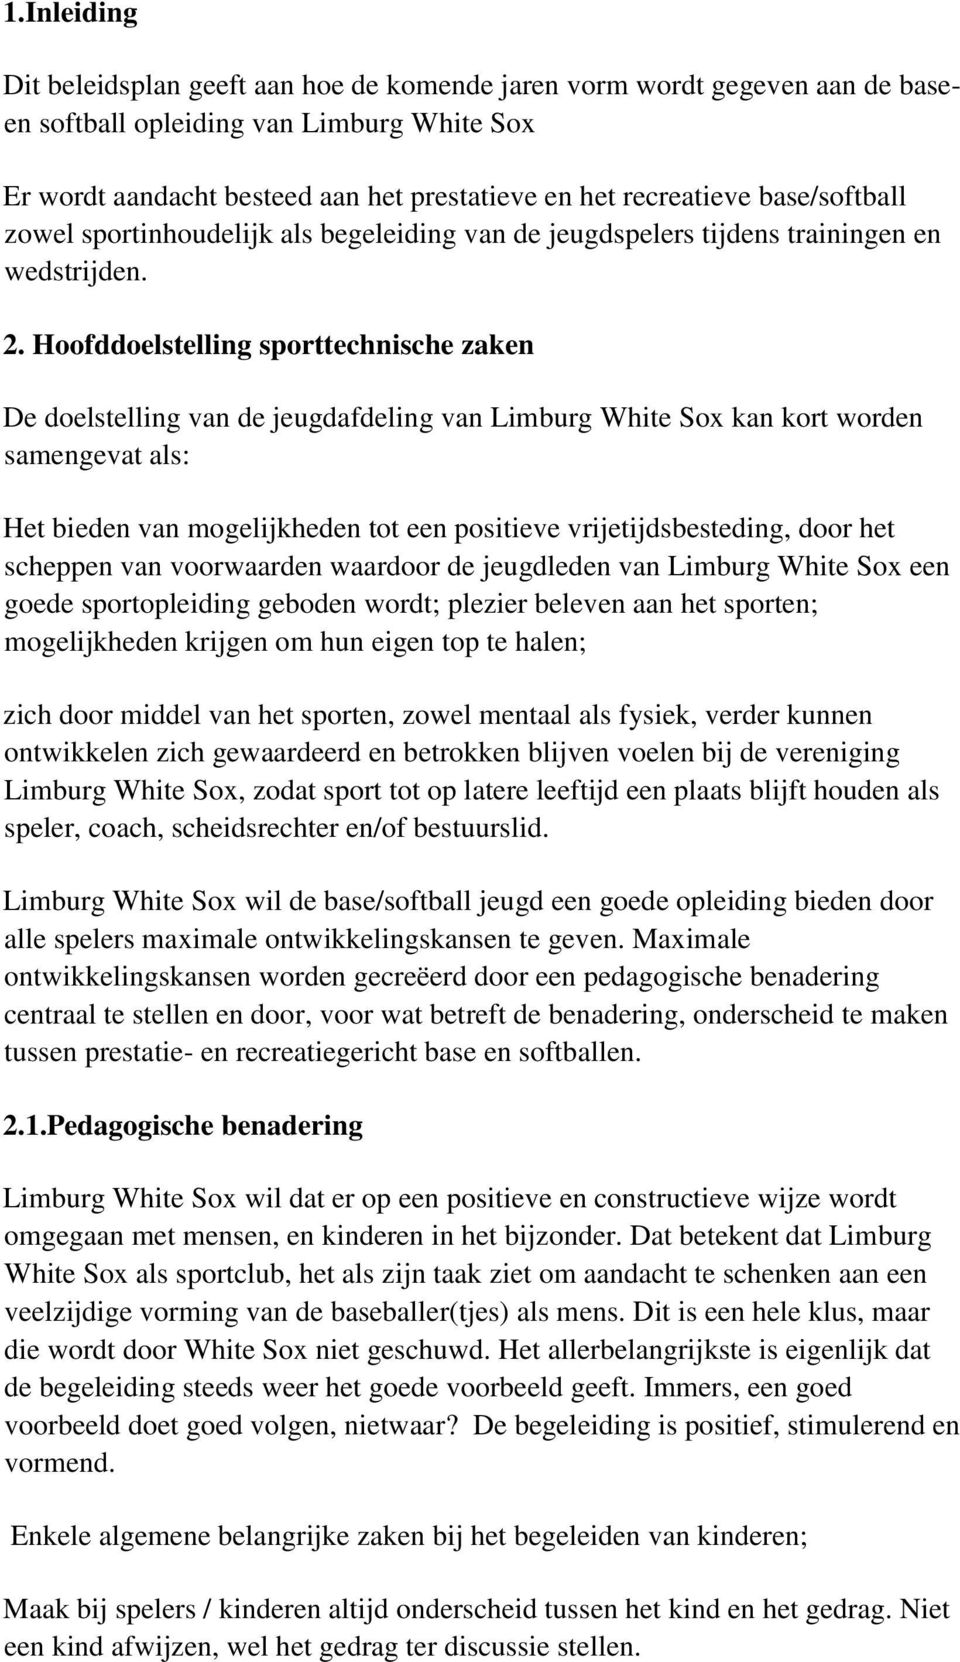 Hoofddoelstelling sporttechnische zaken De doelstelling van de jeugdafdeling van Limburg White Sox kan kort worden samengevat als: Het bieden van mogelijkheden tot een positieve vrijetijdsbesteding,